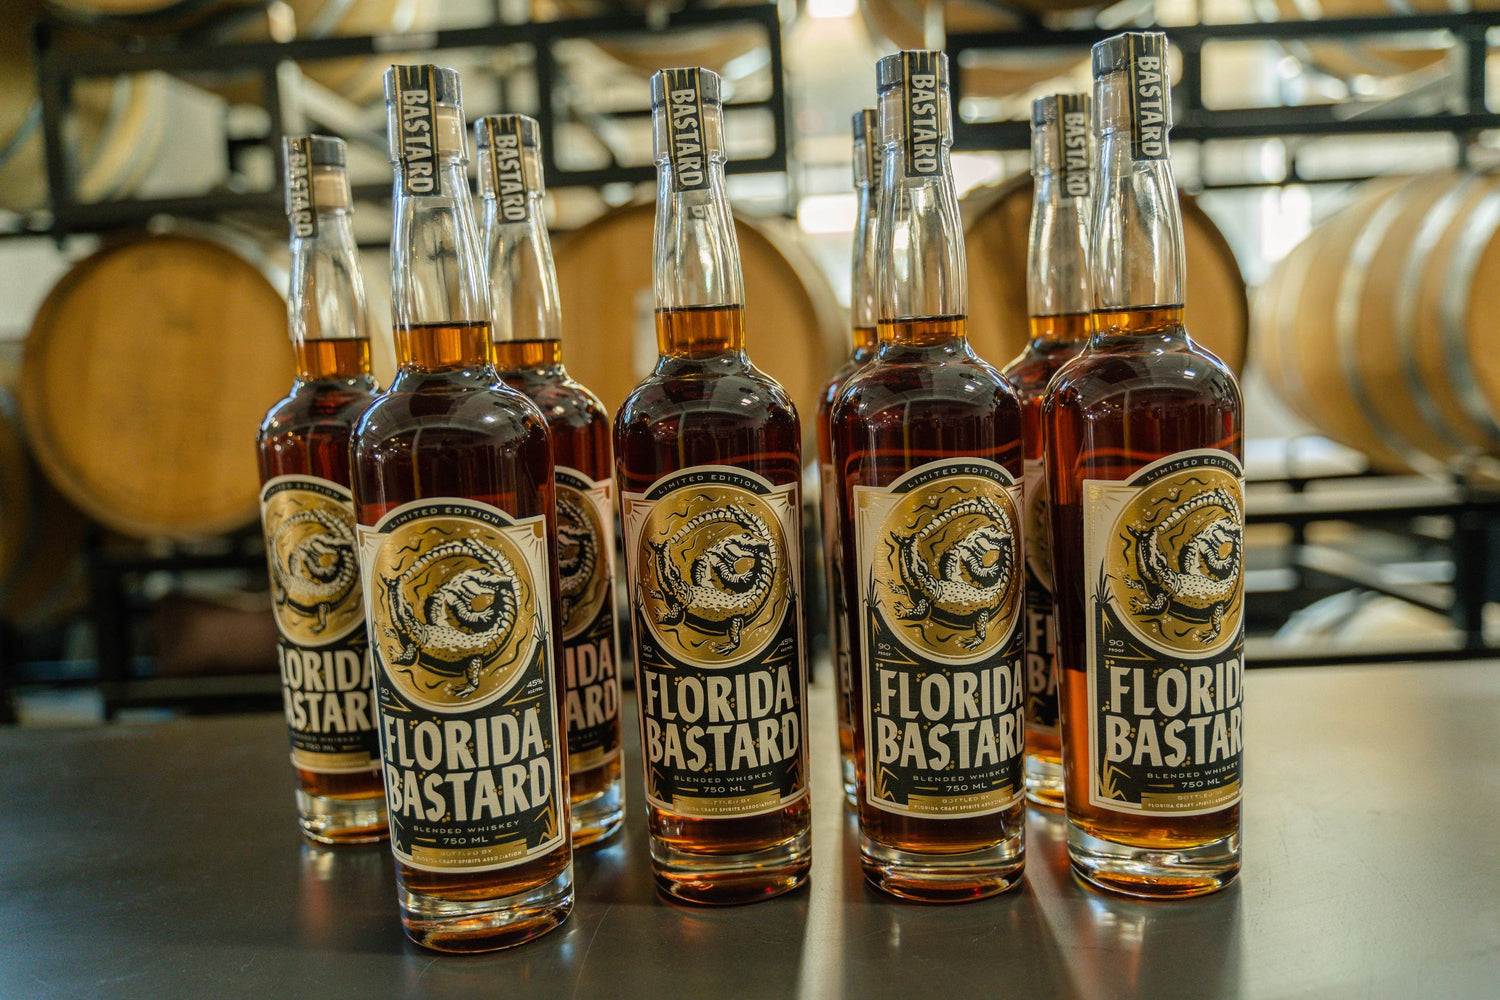 LIMITED RELEASE: Florida Bastard Whiskey